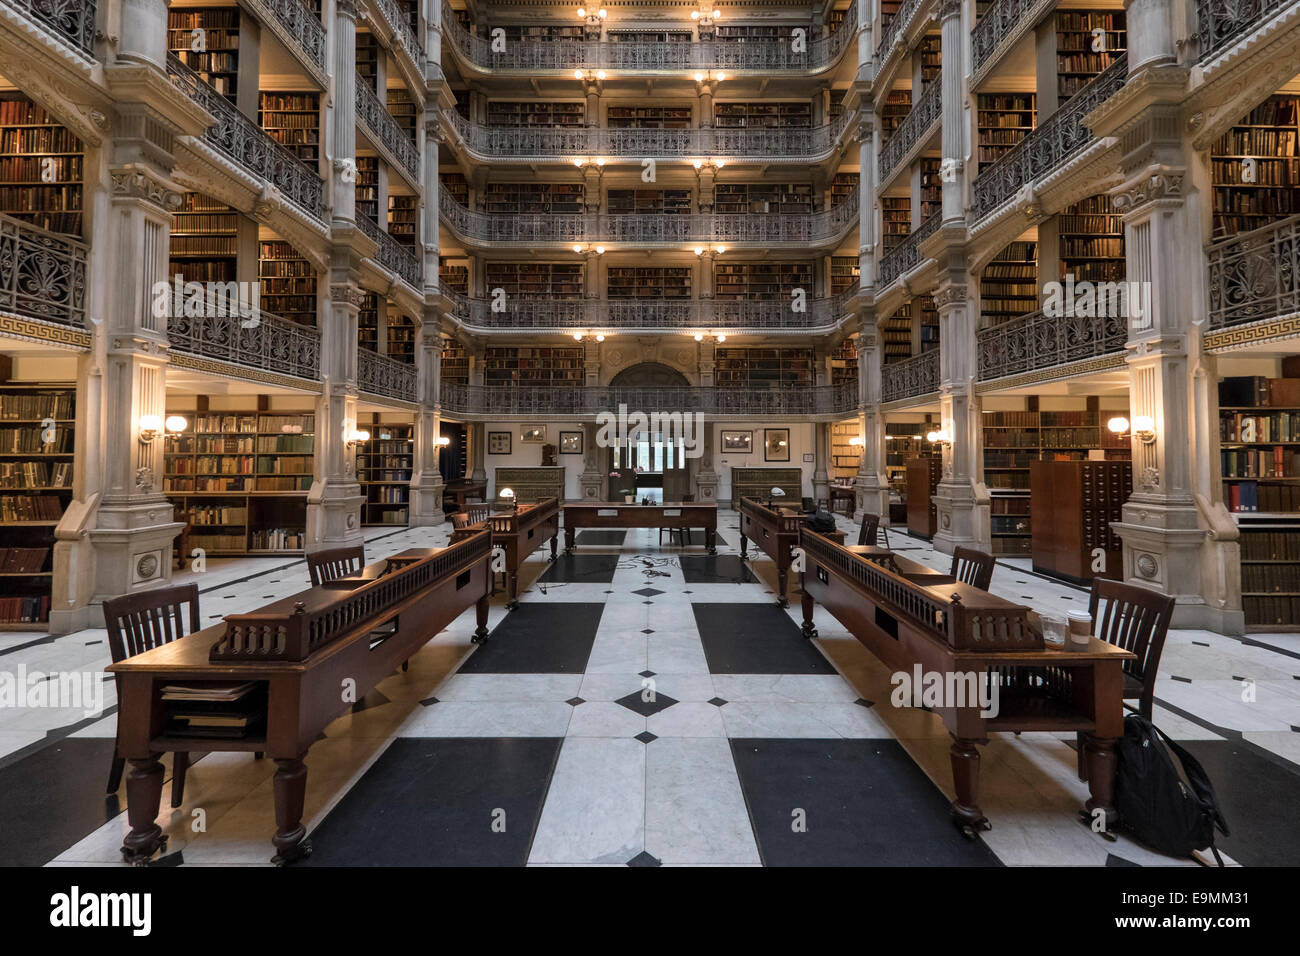 United States, Maryland, Baltimore, Johns Hopkins University, Peabody Library Stock Photo